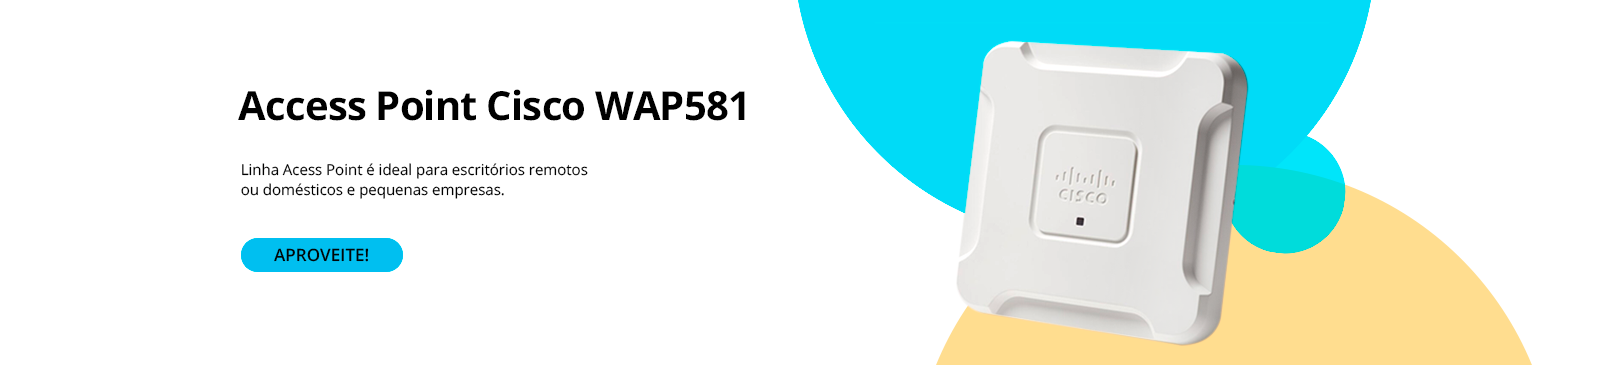 Wap581-Wireless